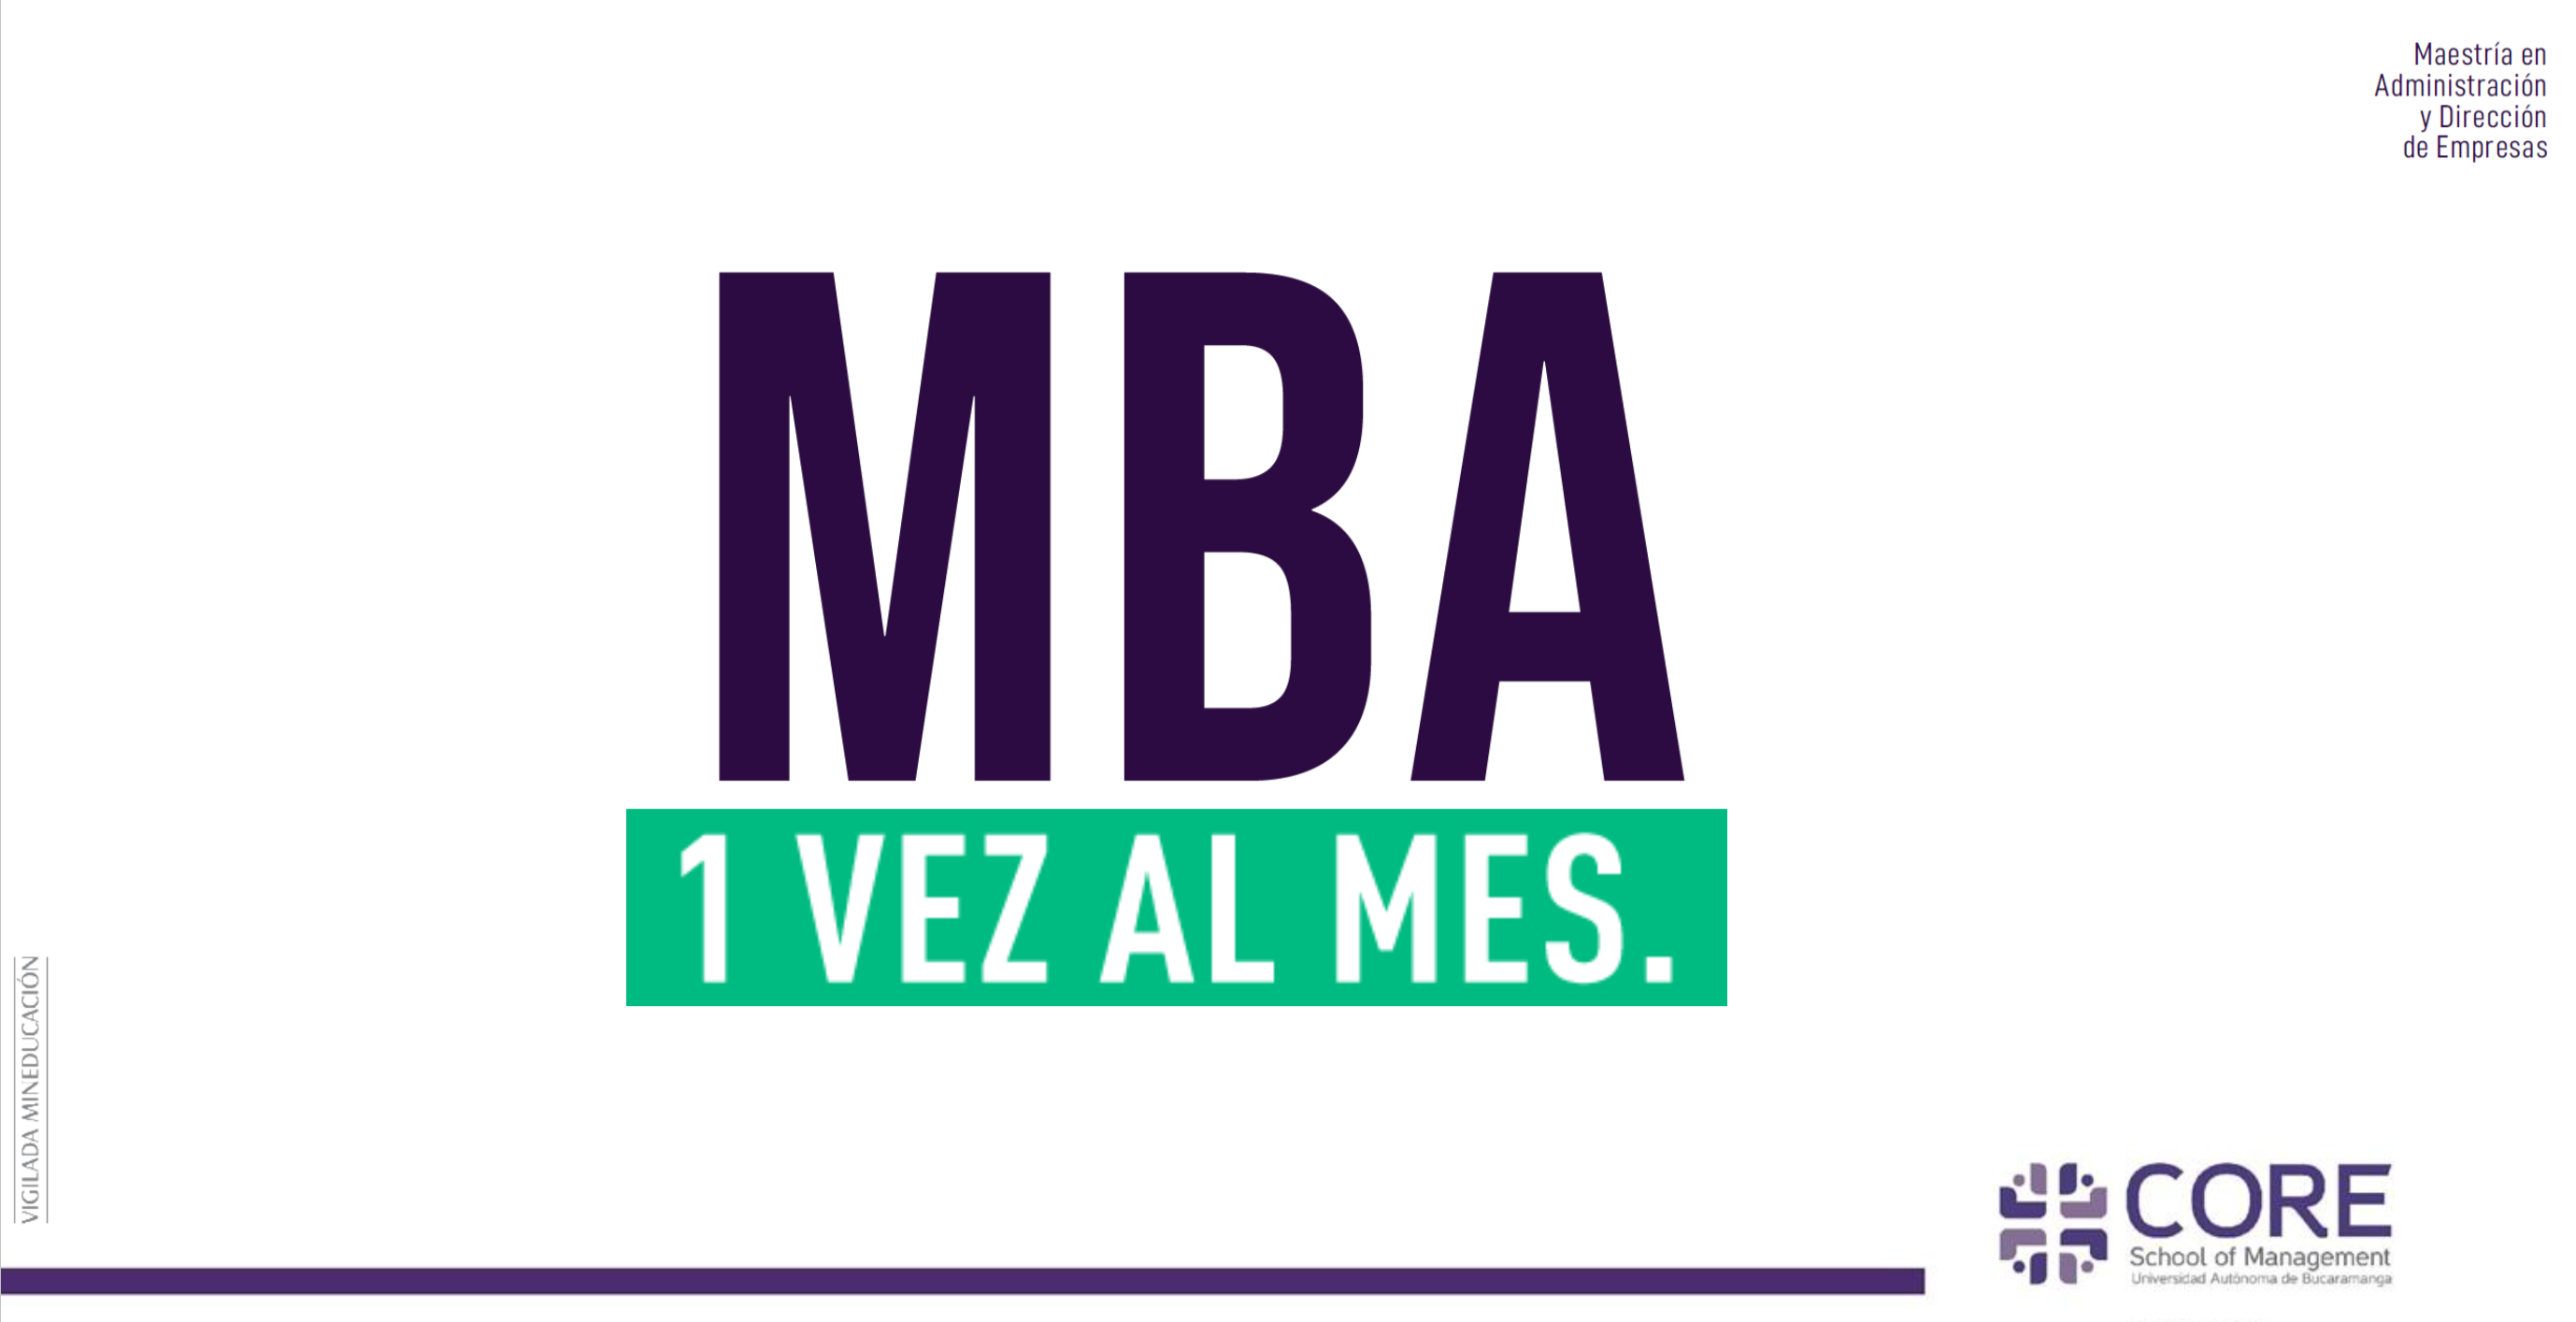 ‘MBA 1 vez al mes’, alternativa de CORE para cursar maestría en Administración y Dirección de Empresas